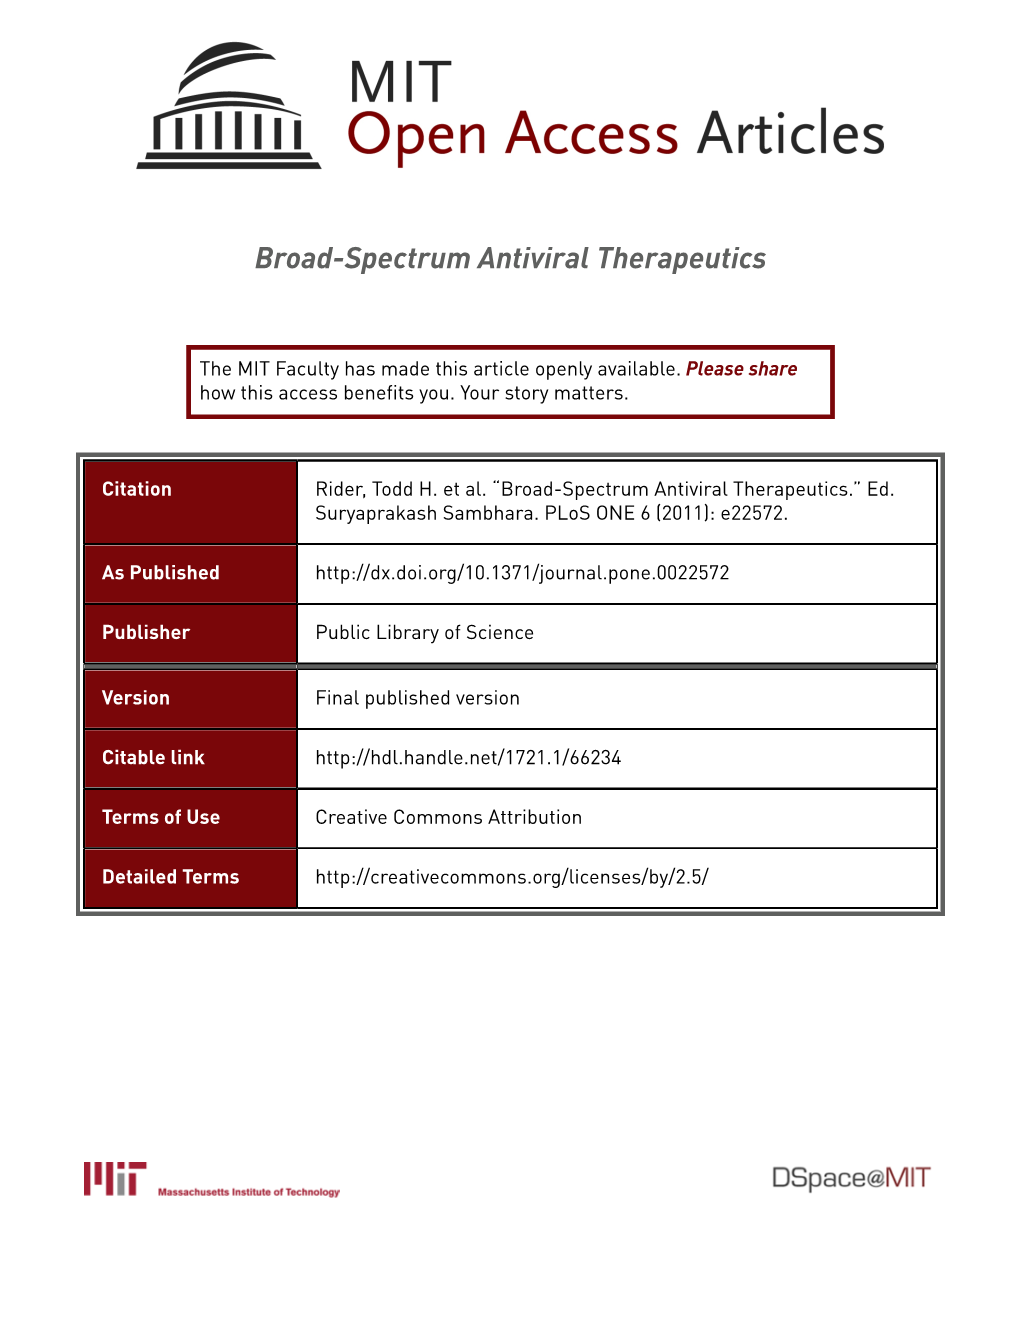 Broad-Spectrum Antiviral Therapeutics